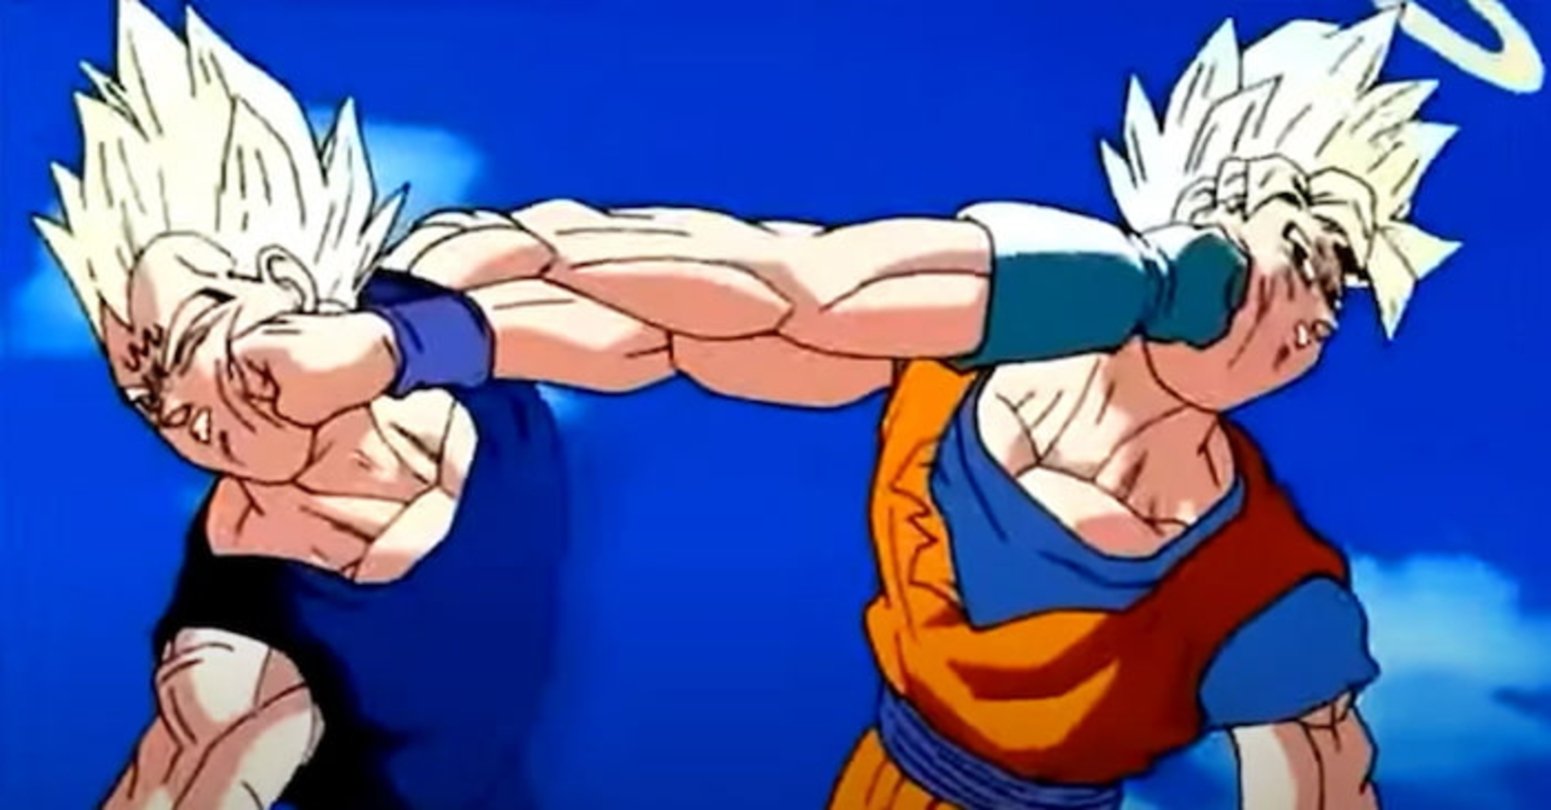 La batalla entre Majin Vegeta y Goku ha sido una de las más memorables de Dragon Ball